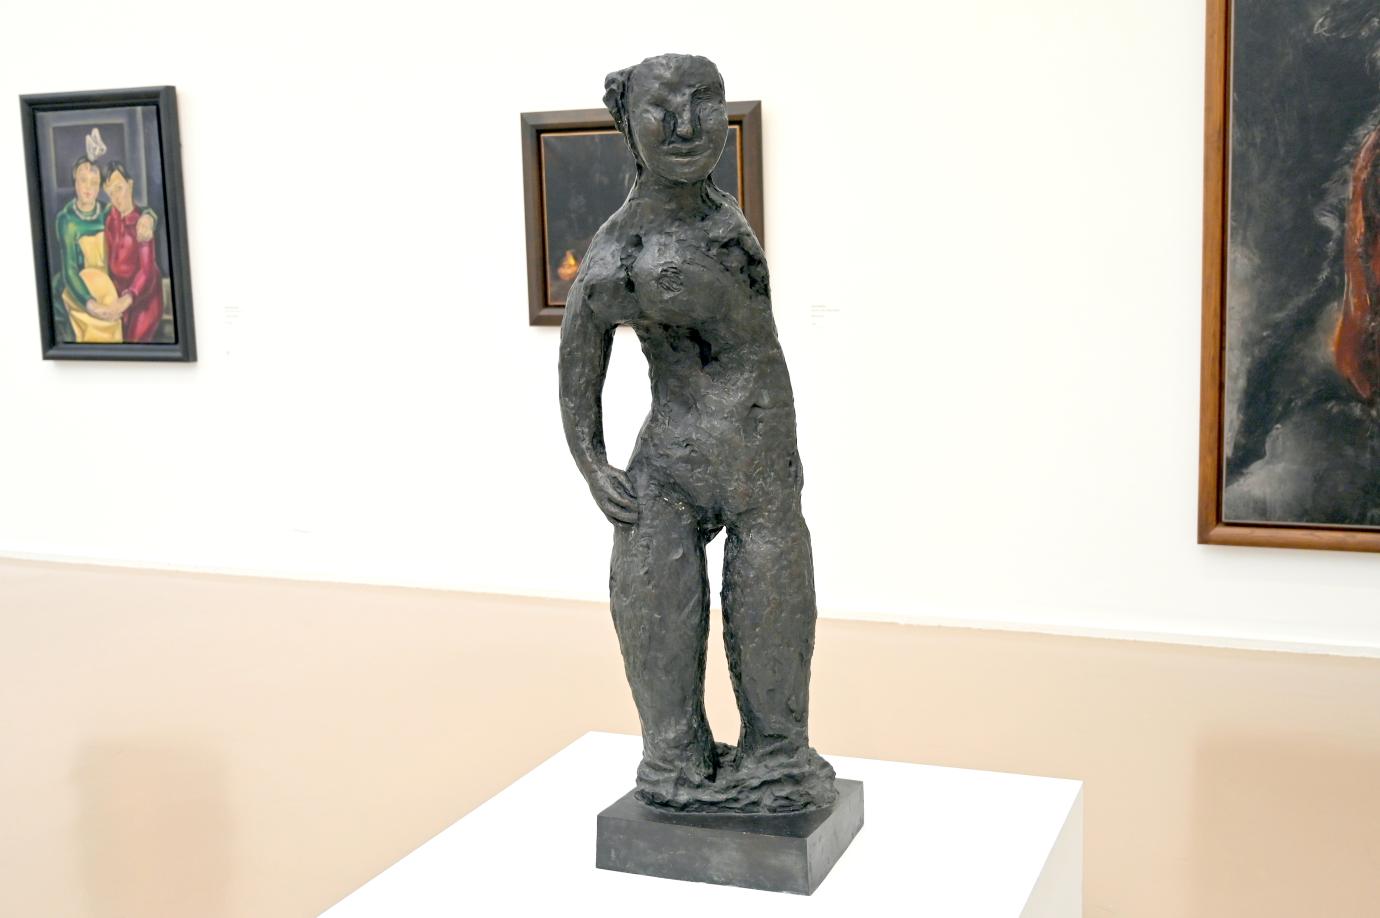 Jean Fautrier (1921–1958), Stehende Frau, Paris, Musée d’art moderne de la Ville de Paris, Saal 9, 1935